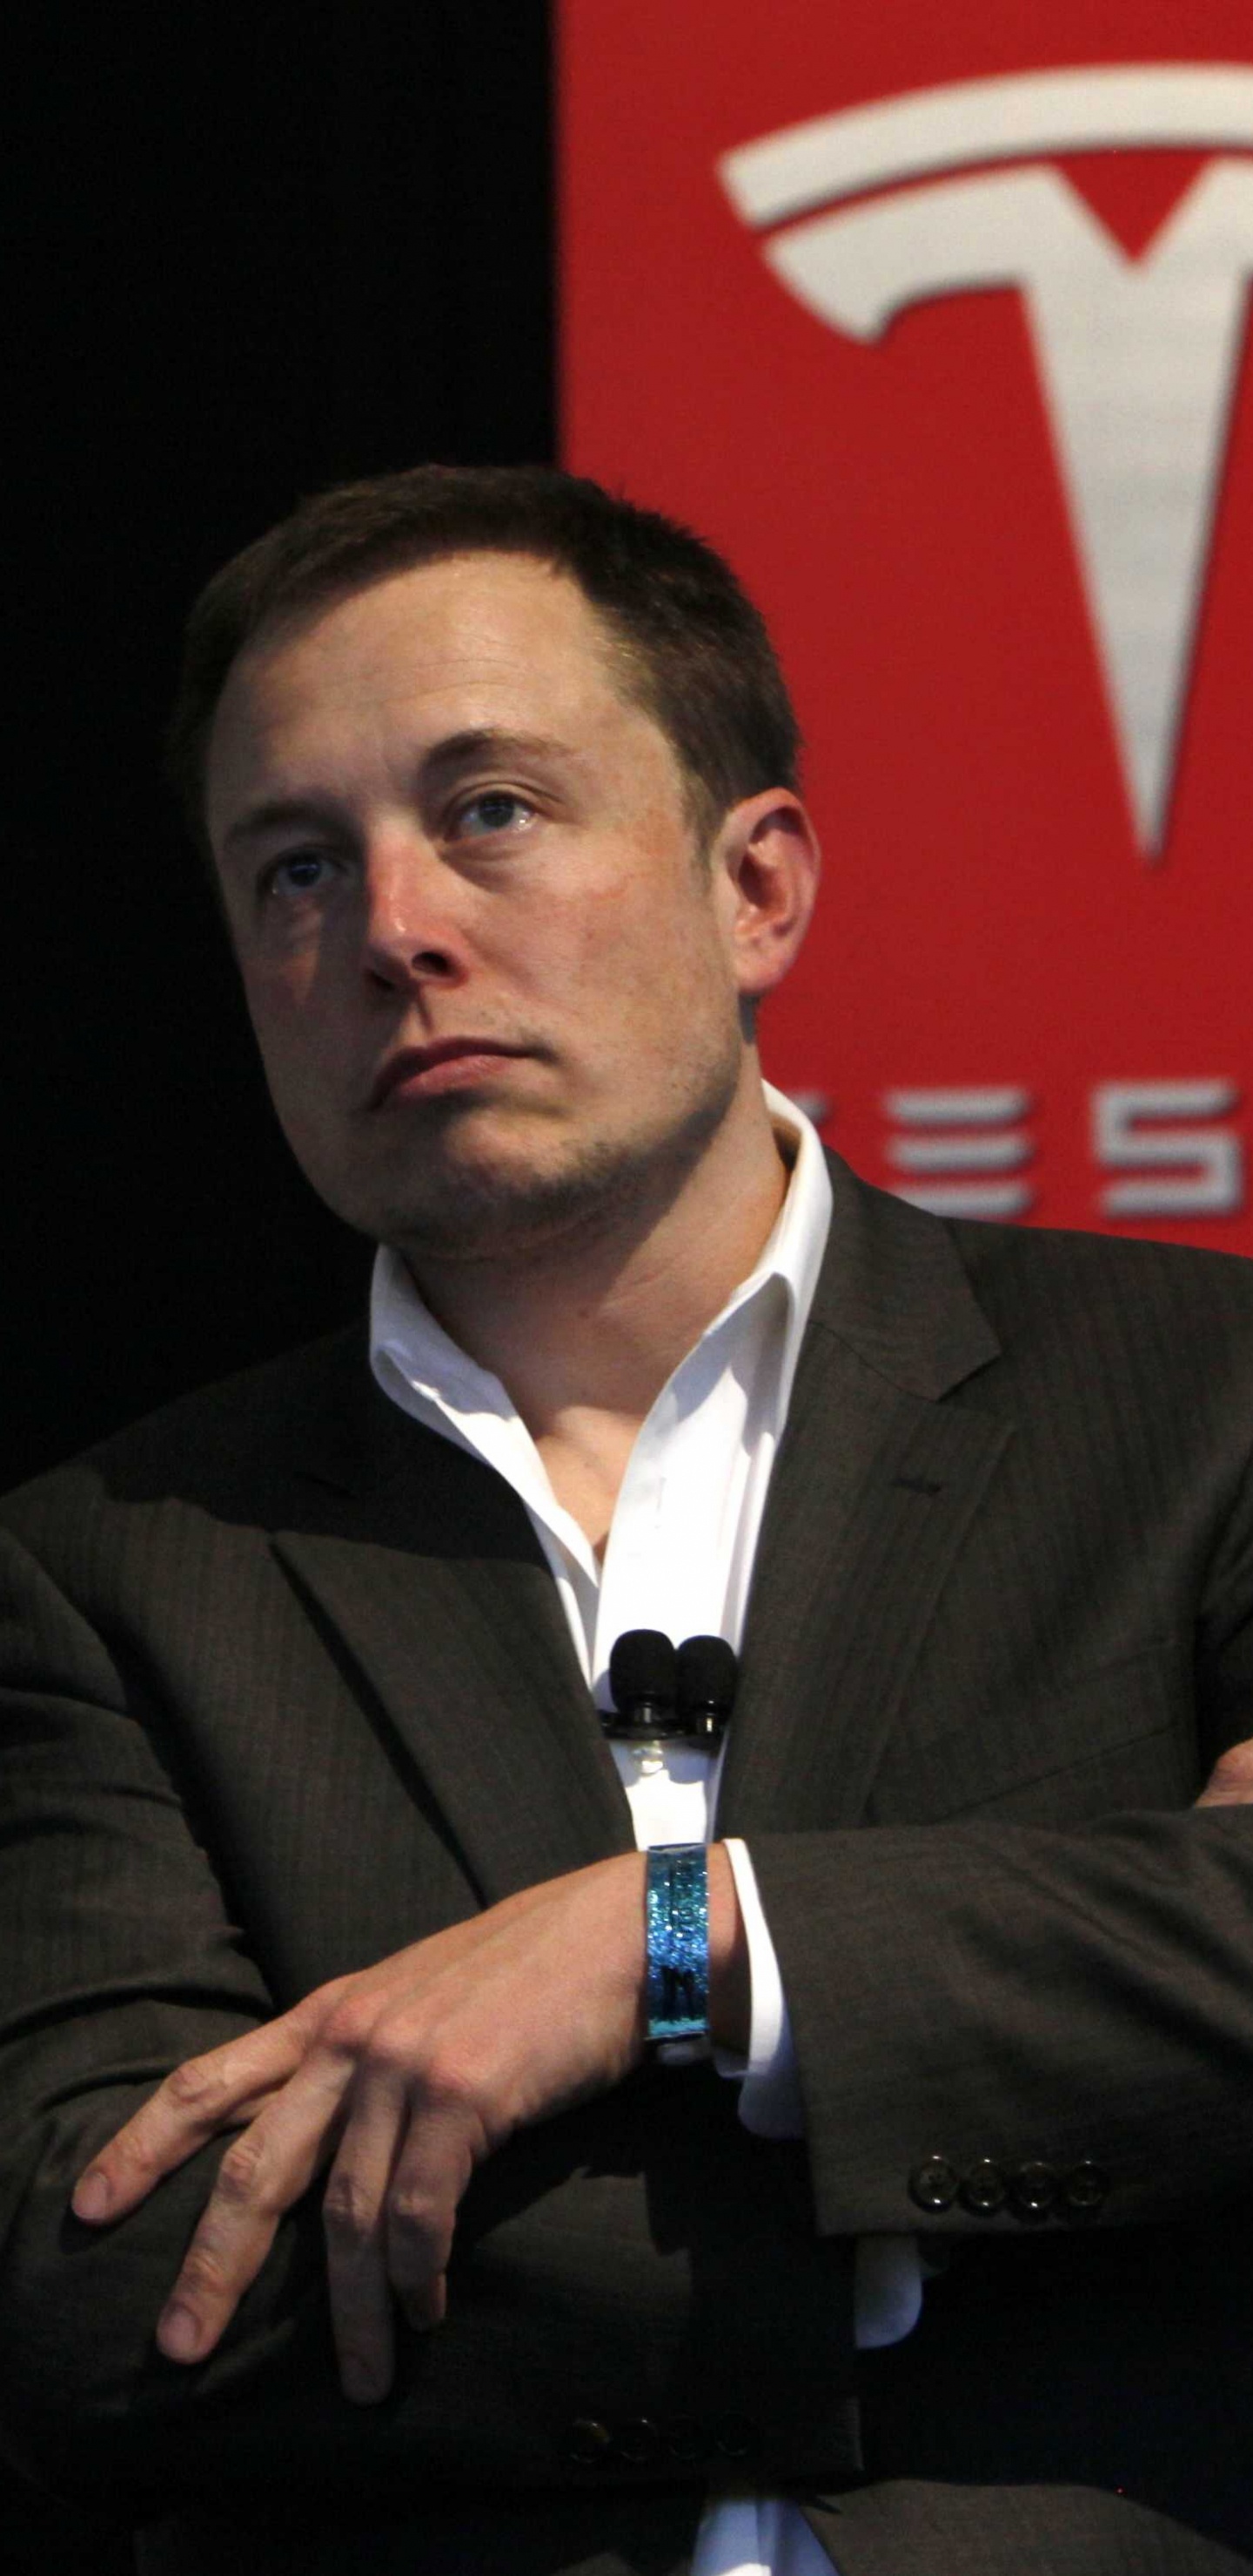 Elon Musk, Tesla Model S, Tesla Model X, Car, Public Speaking. Wallpaper in 1440x2960 Resolution